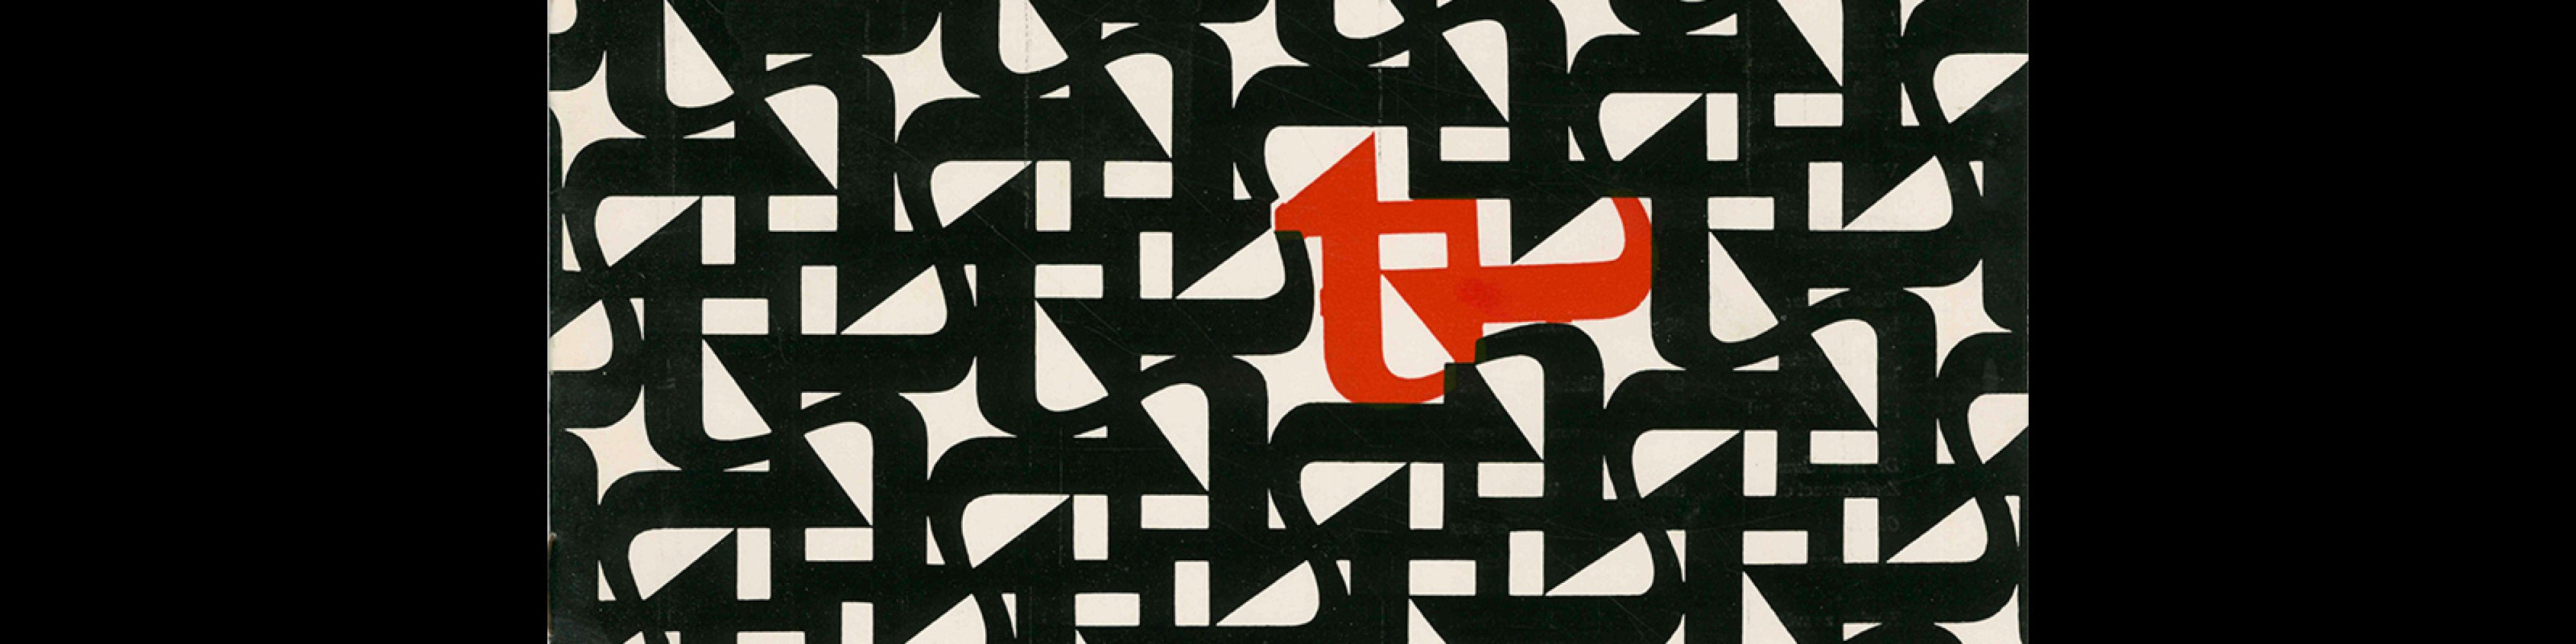 Typografia, ročník 66, 05, 1963. Cover design by Antonín Ernest